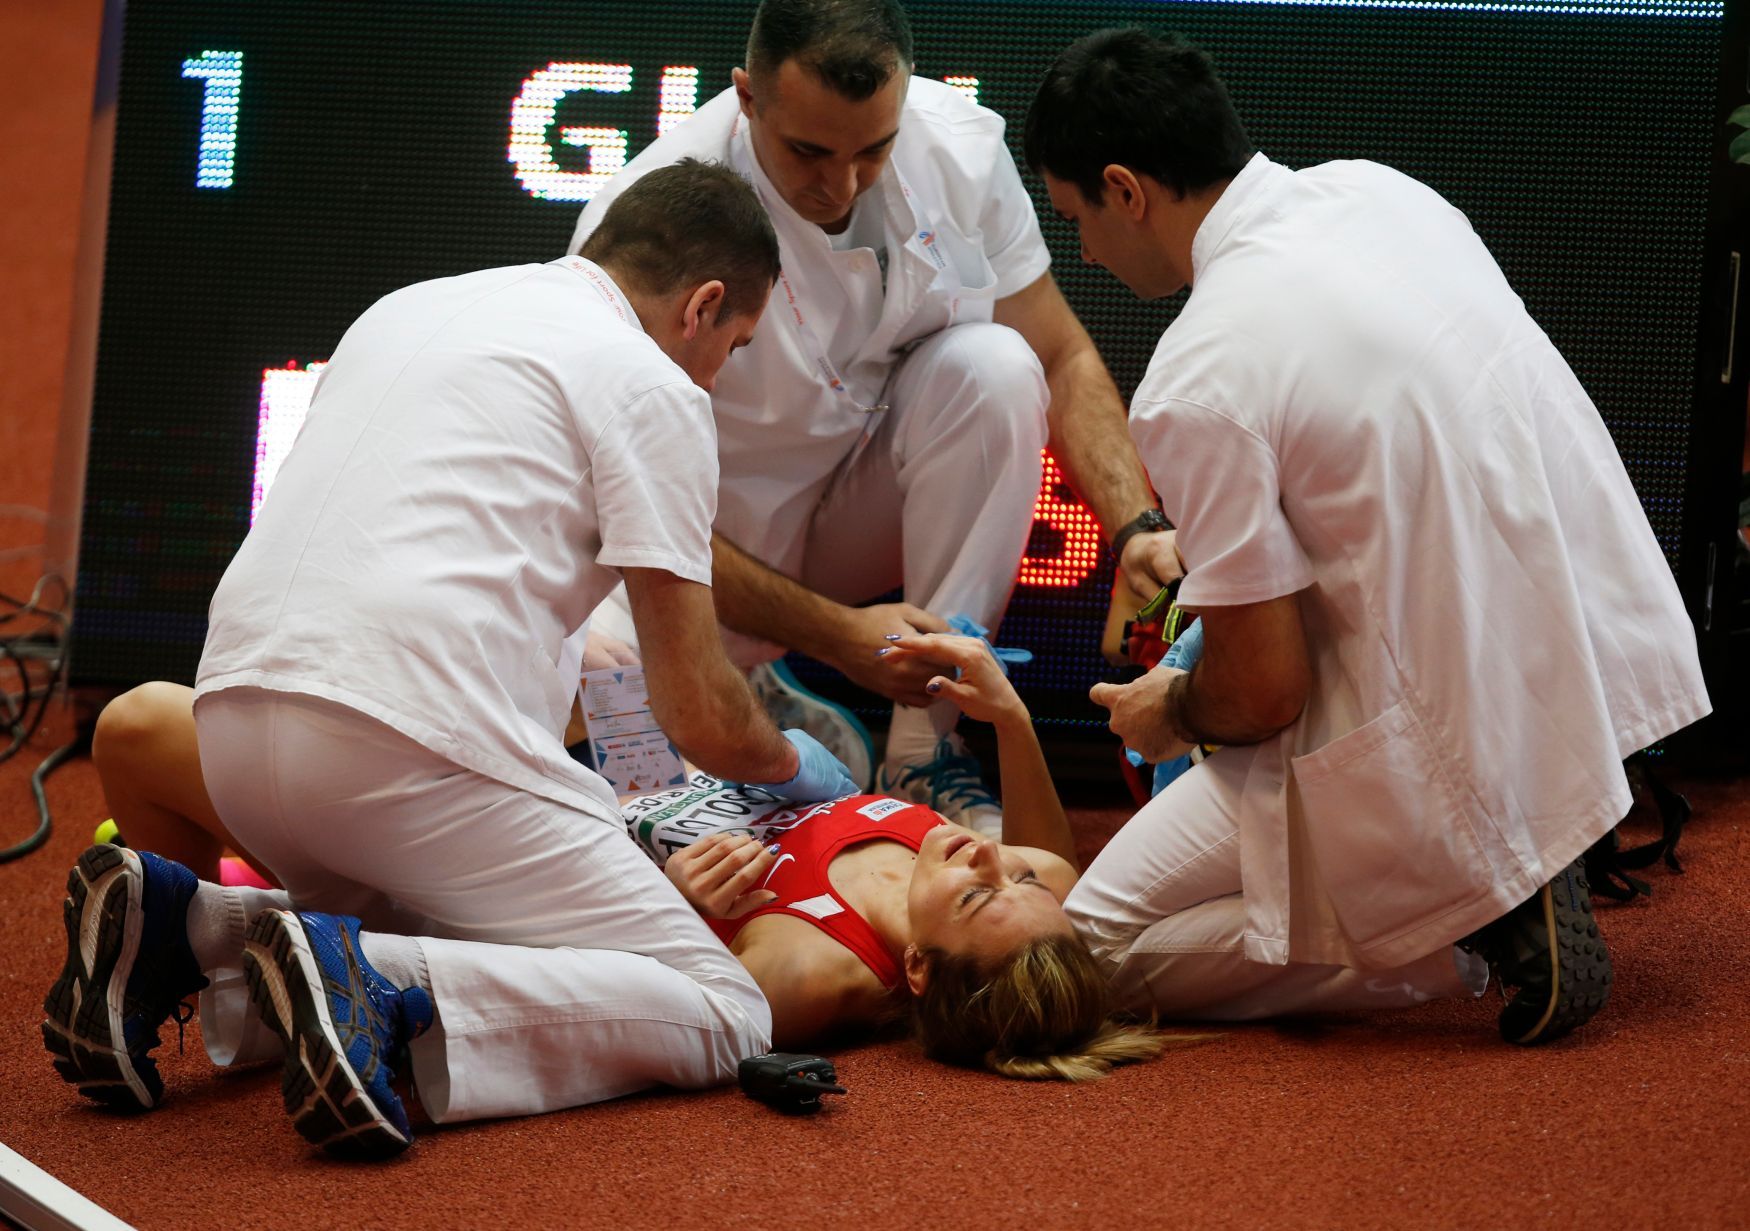 Denisa Rosolová po pádu v rozběhu 400 metrů na HME 2017